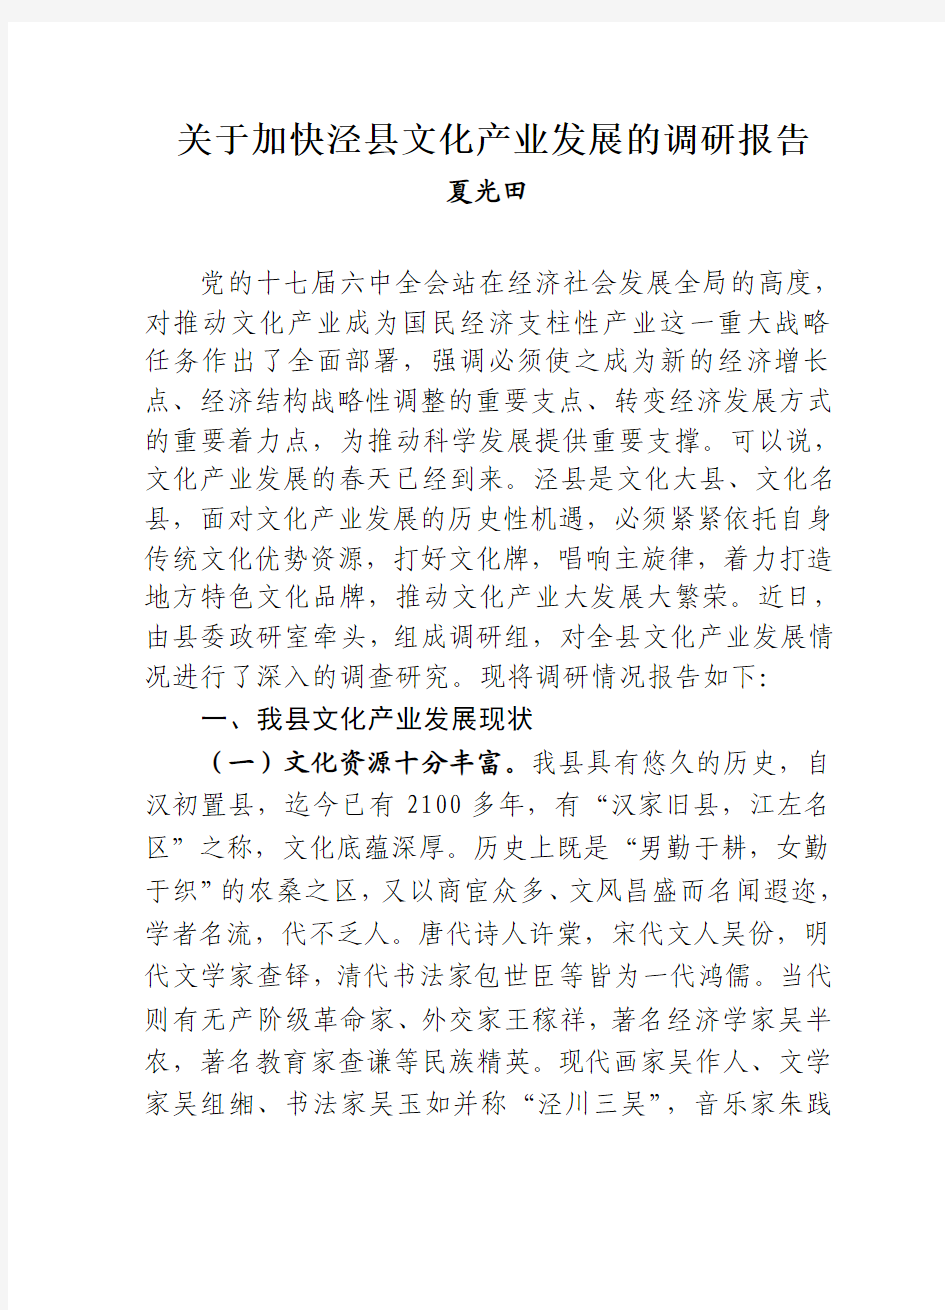 关于加快泾县文化产业发展的调研报告